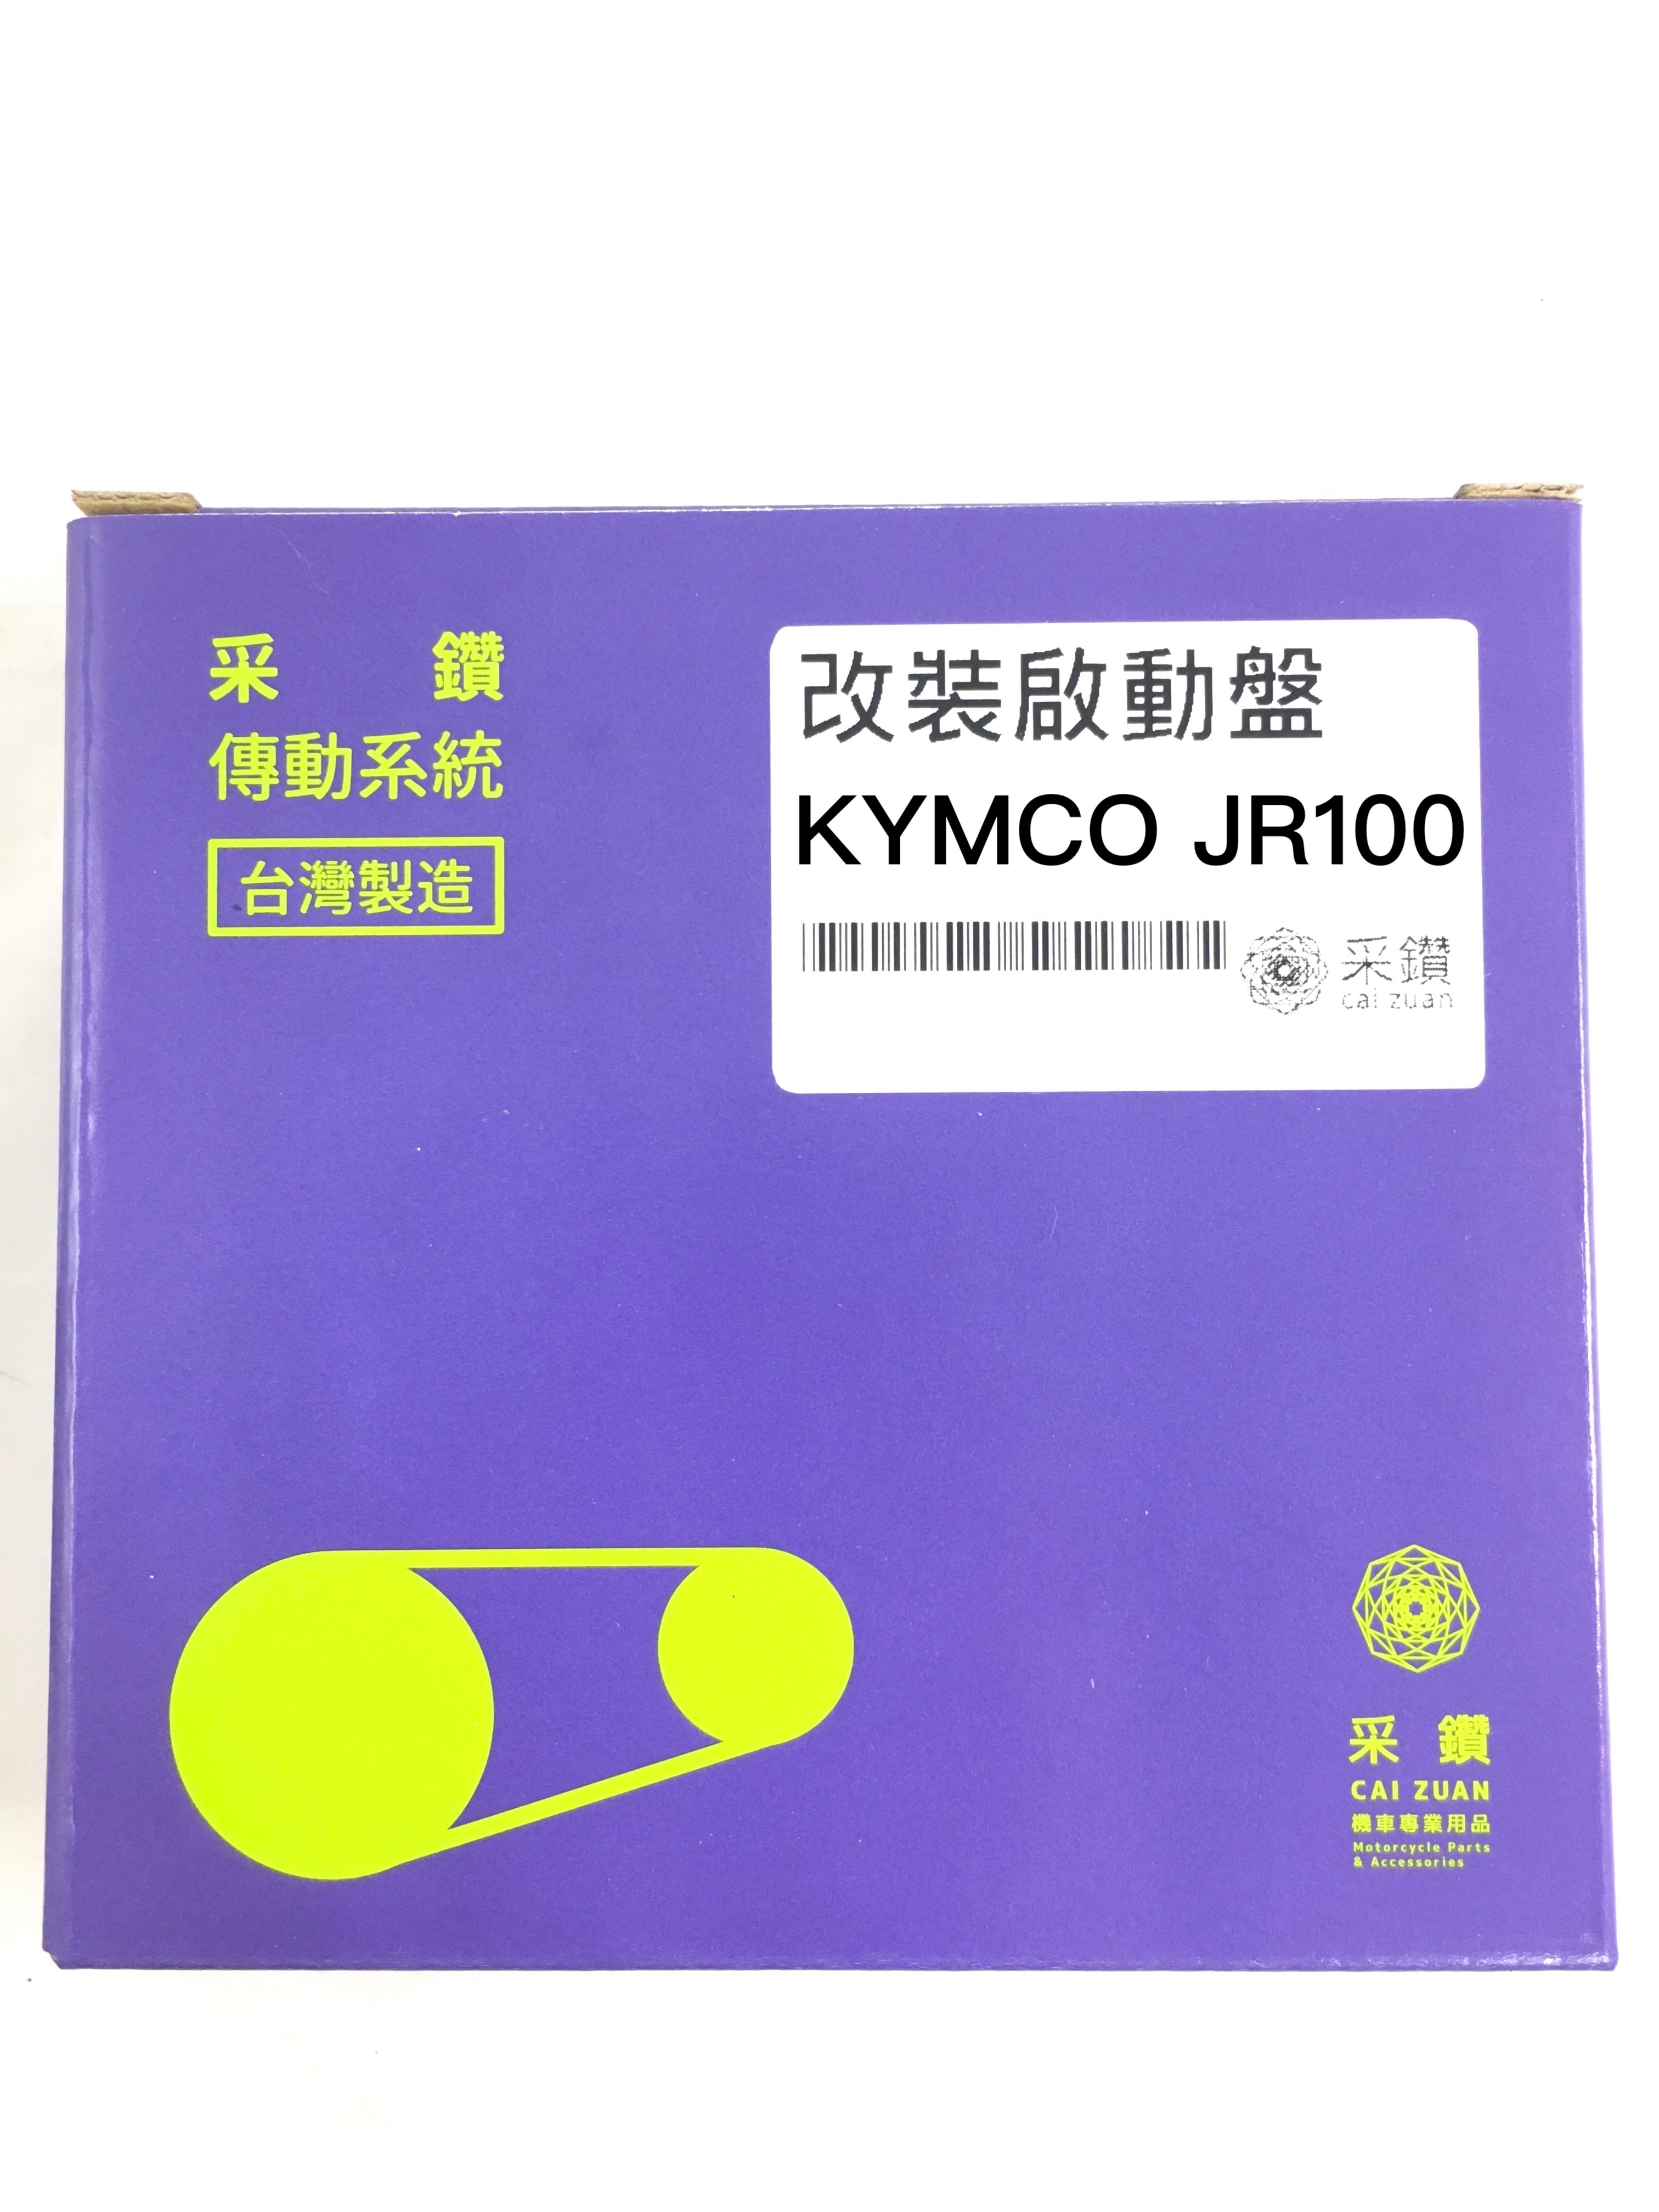 光陽KYMCO JR100 加強版啟動盤 無螺絲設計耐用 啟動快 采鑽公司貨